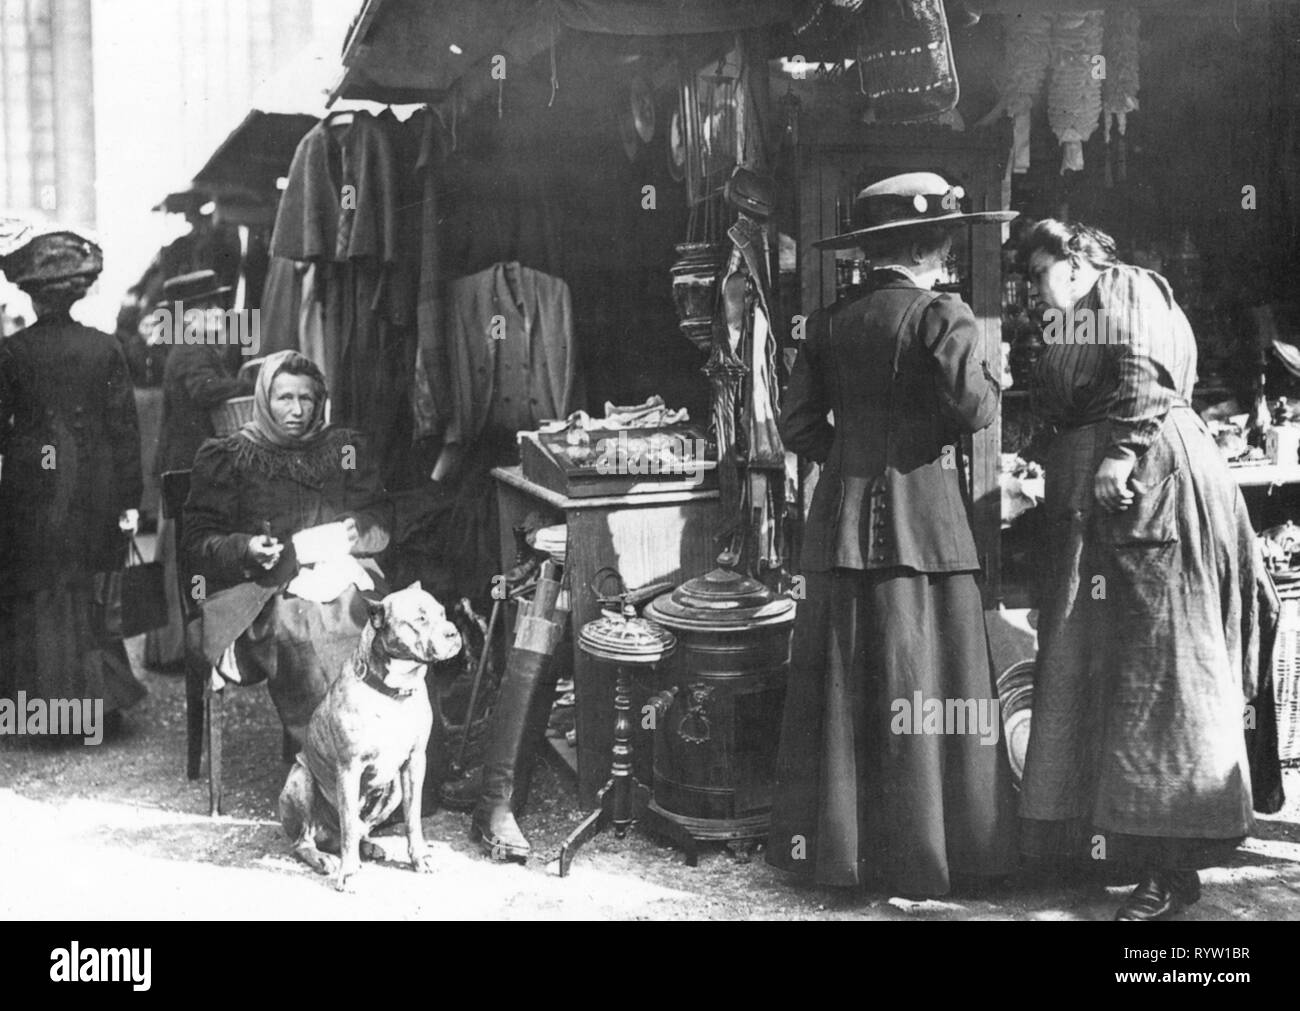 Handel, Märkte, Stand auf der Auer Dult, Mariahilfplatz, München, Foto: Philipp Kester, um 1910, Additional-Rights - Clearance-Info - Not-Available Stockfoto